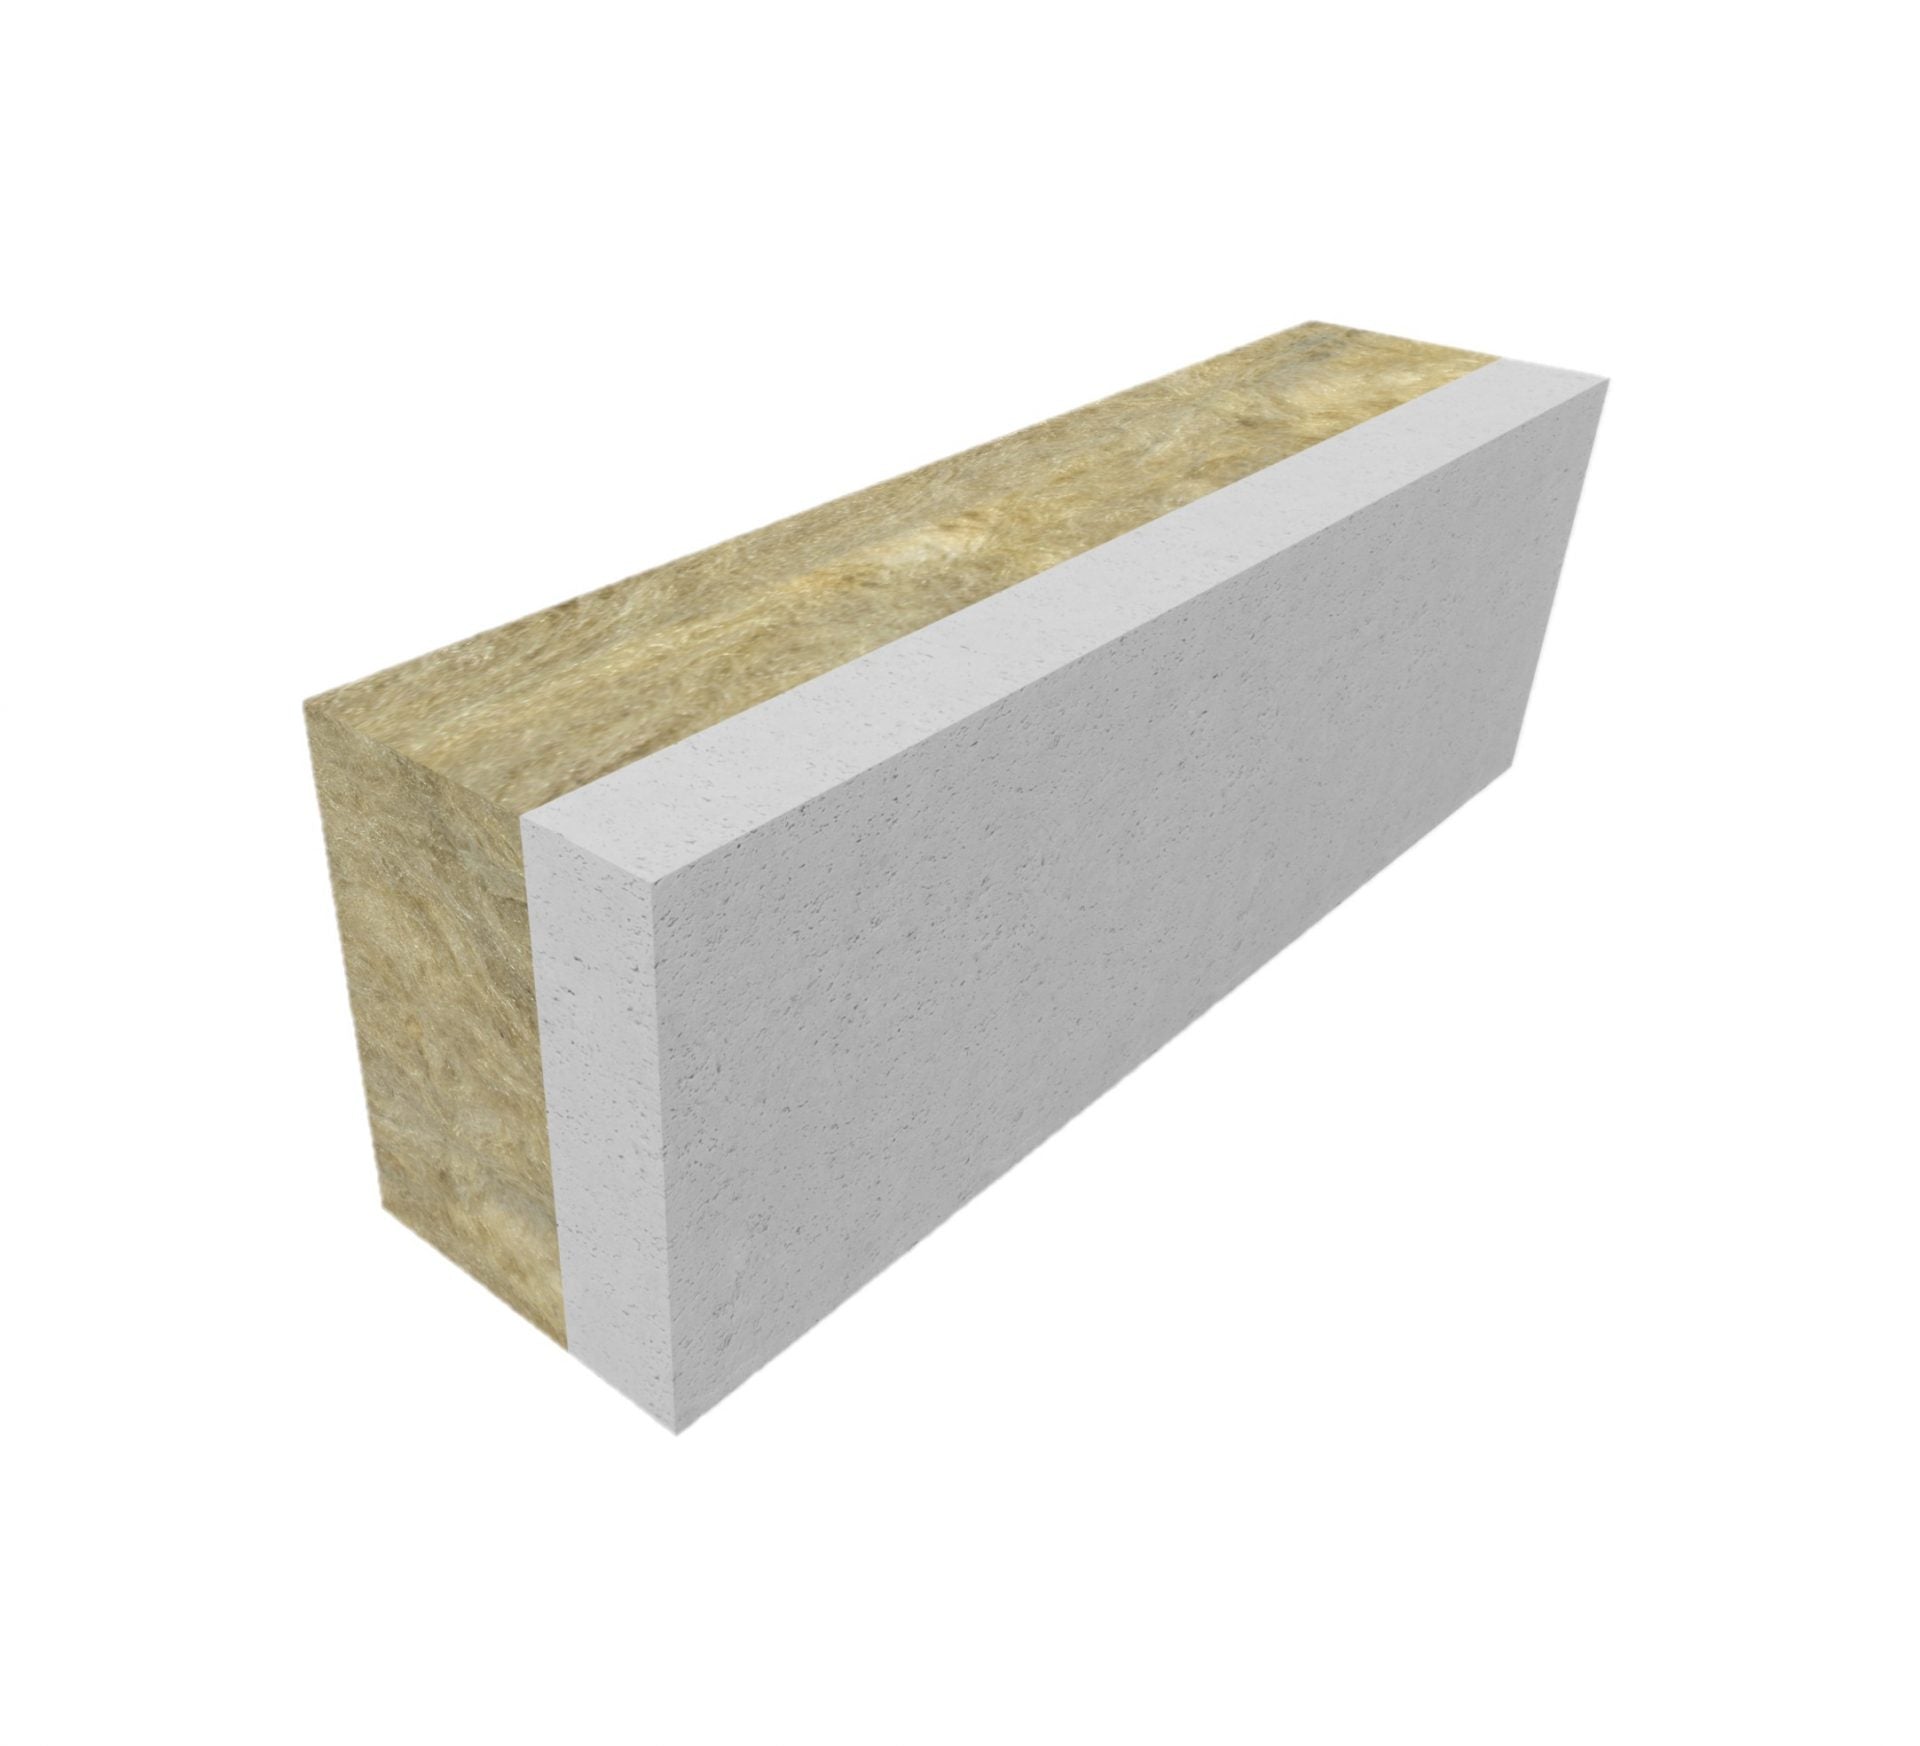 Insulation blocks 170mm R-value 3.16 (per m2)